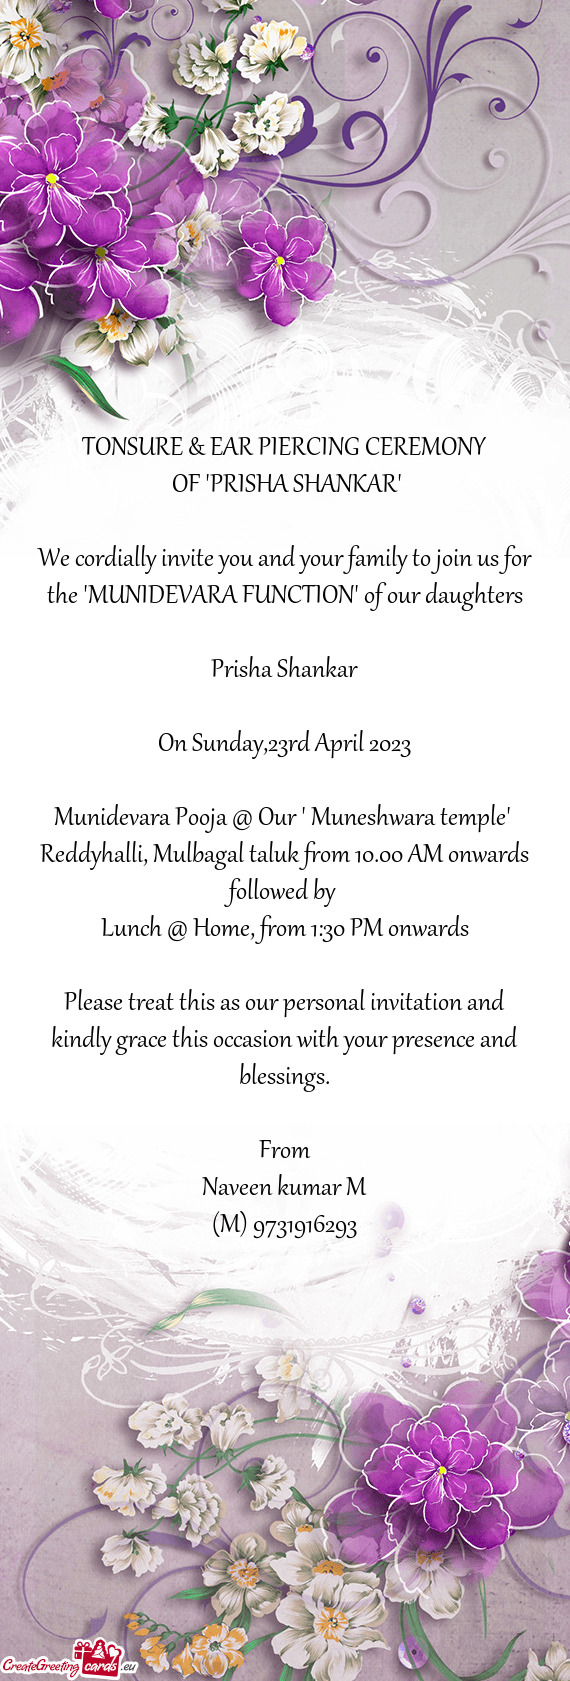 Munidevara Pooja @ Our " Muneshwara temple"